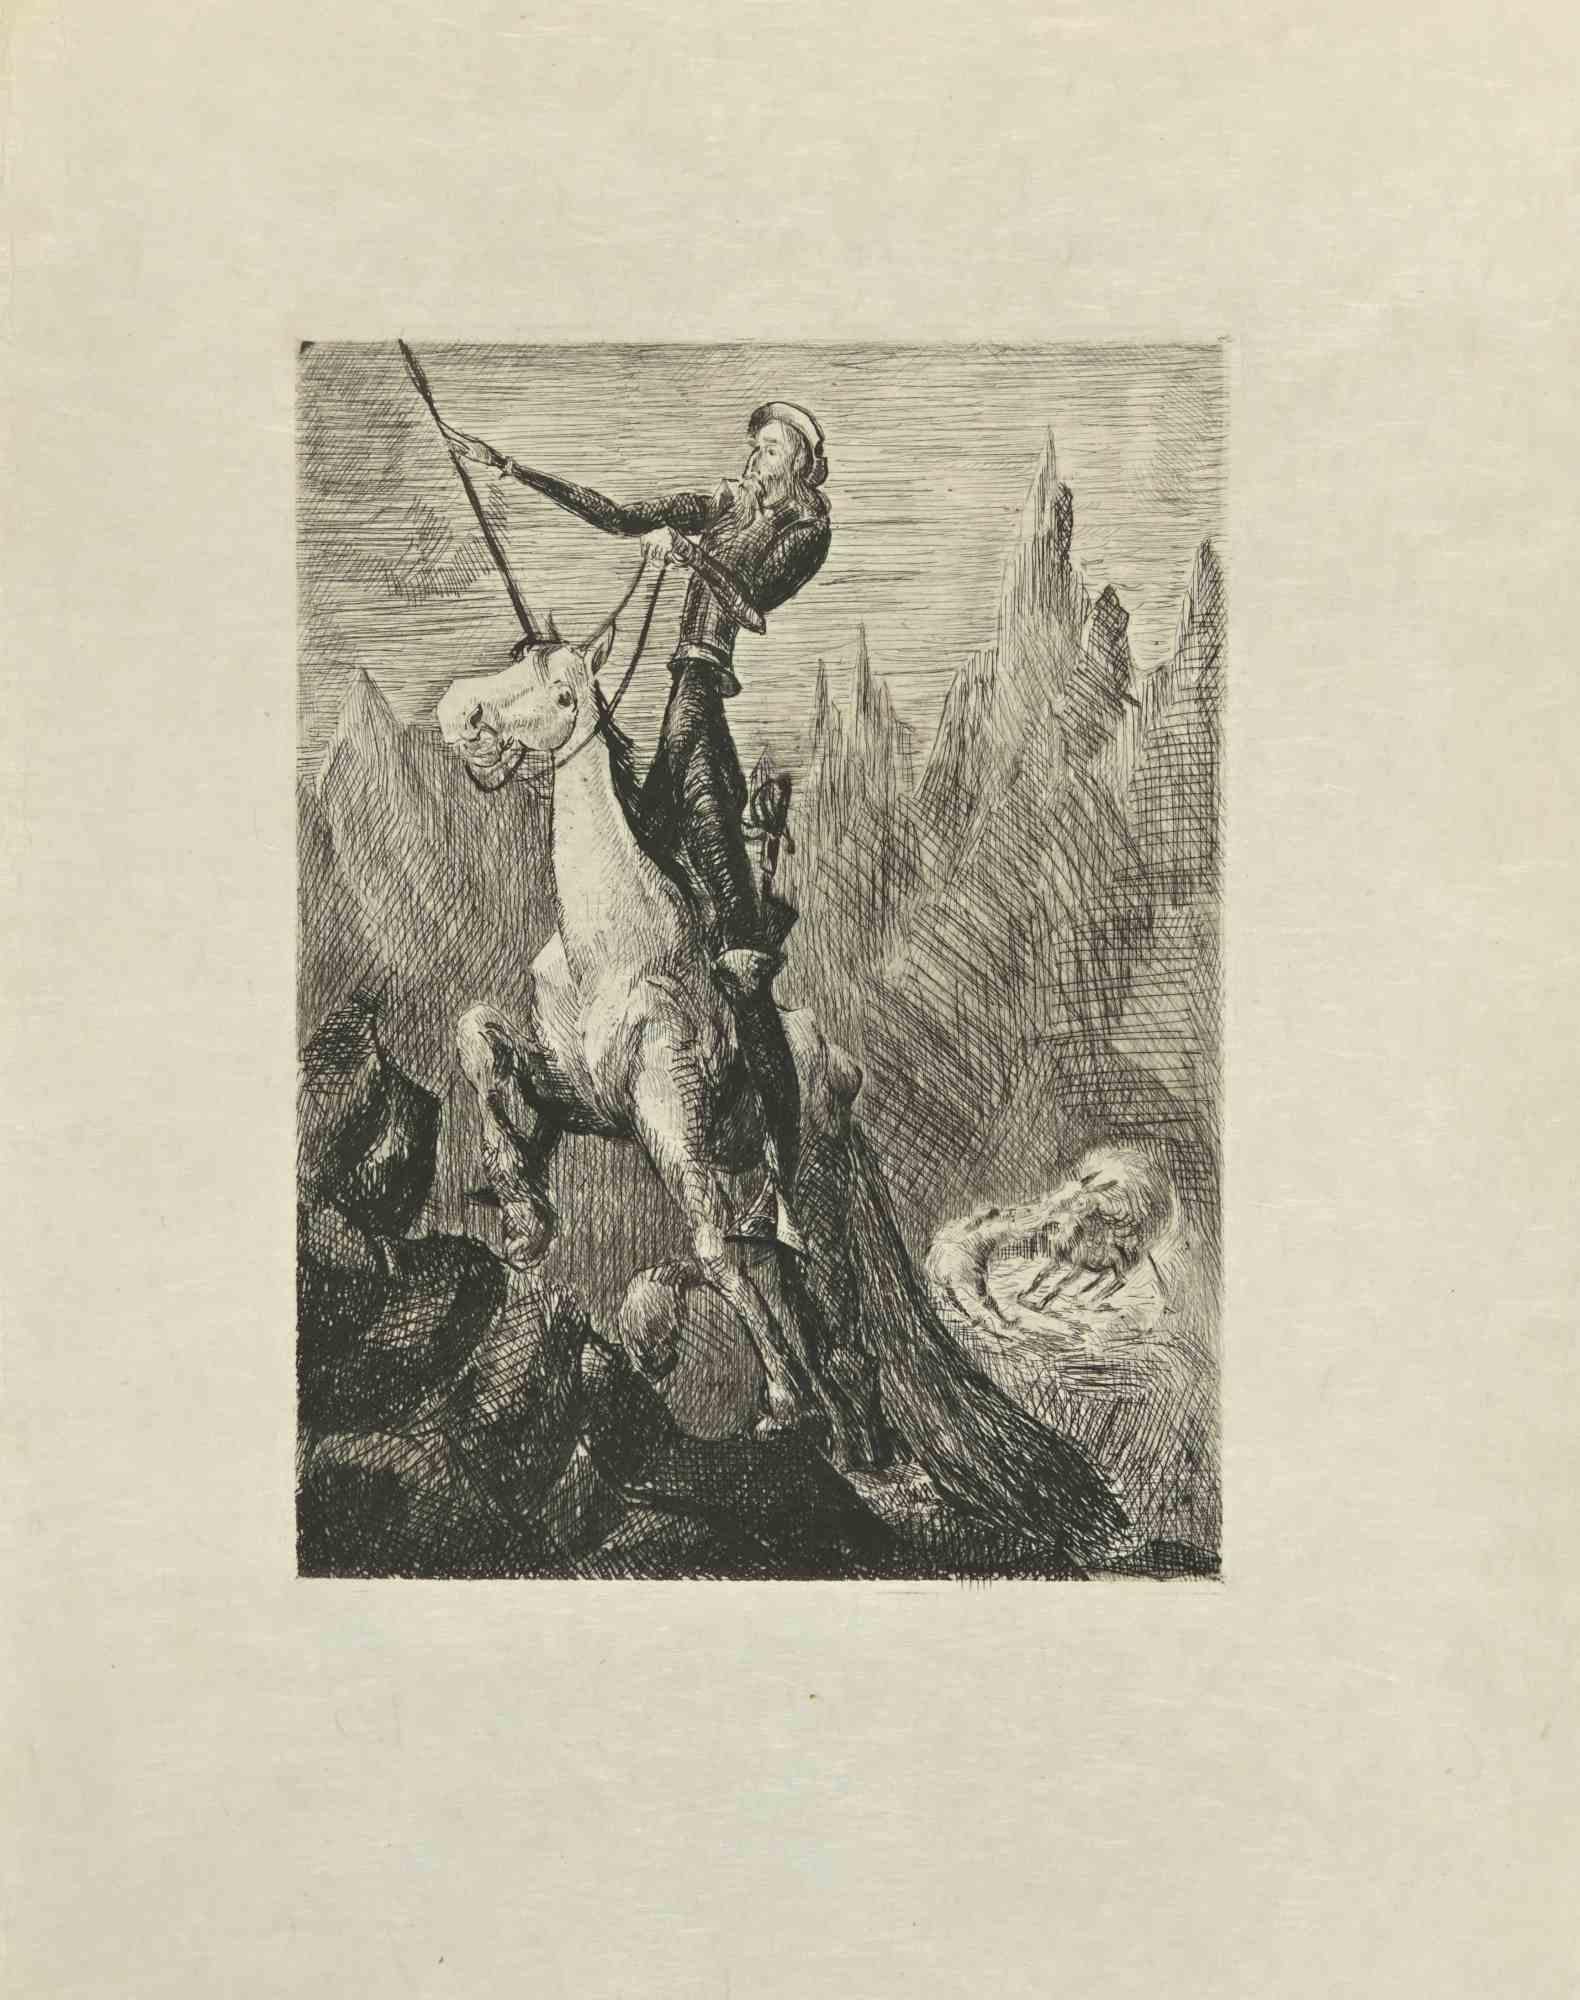 Don Quichotte au galop est une gravure à l'eau-forte et à la pointe sèche sur papier japonais de couleur ivoire, réalisée par Wladyslaw Jahl en 1951.

Il fait partie d'une édition limitée à 125 exemplaires.

Bonnes conditions.

L'œuvre représente